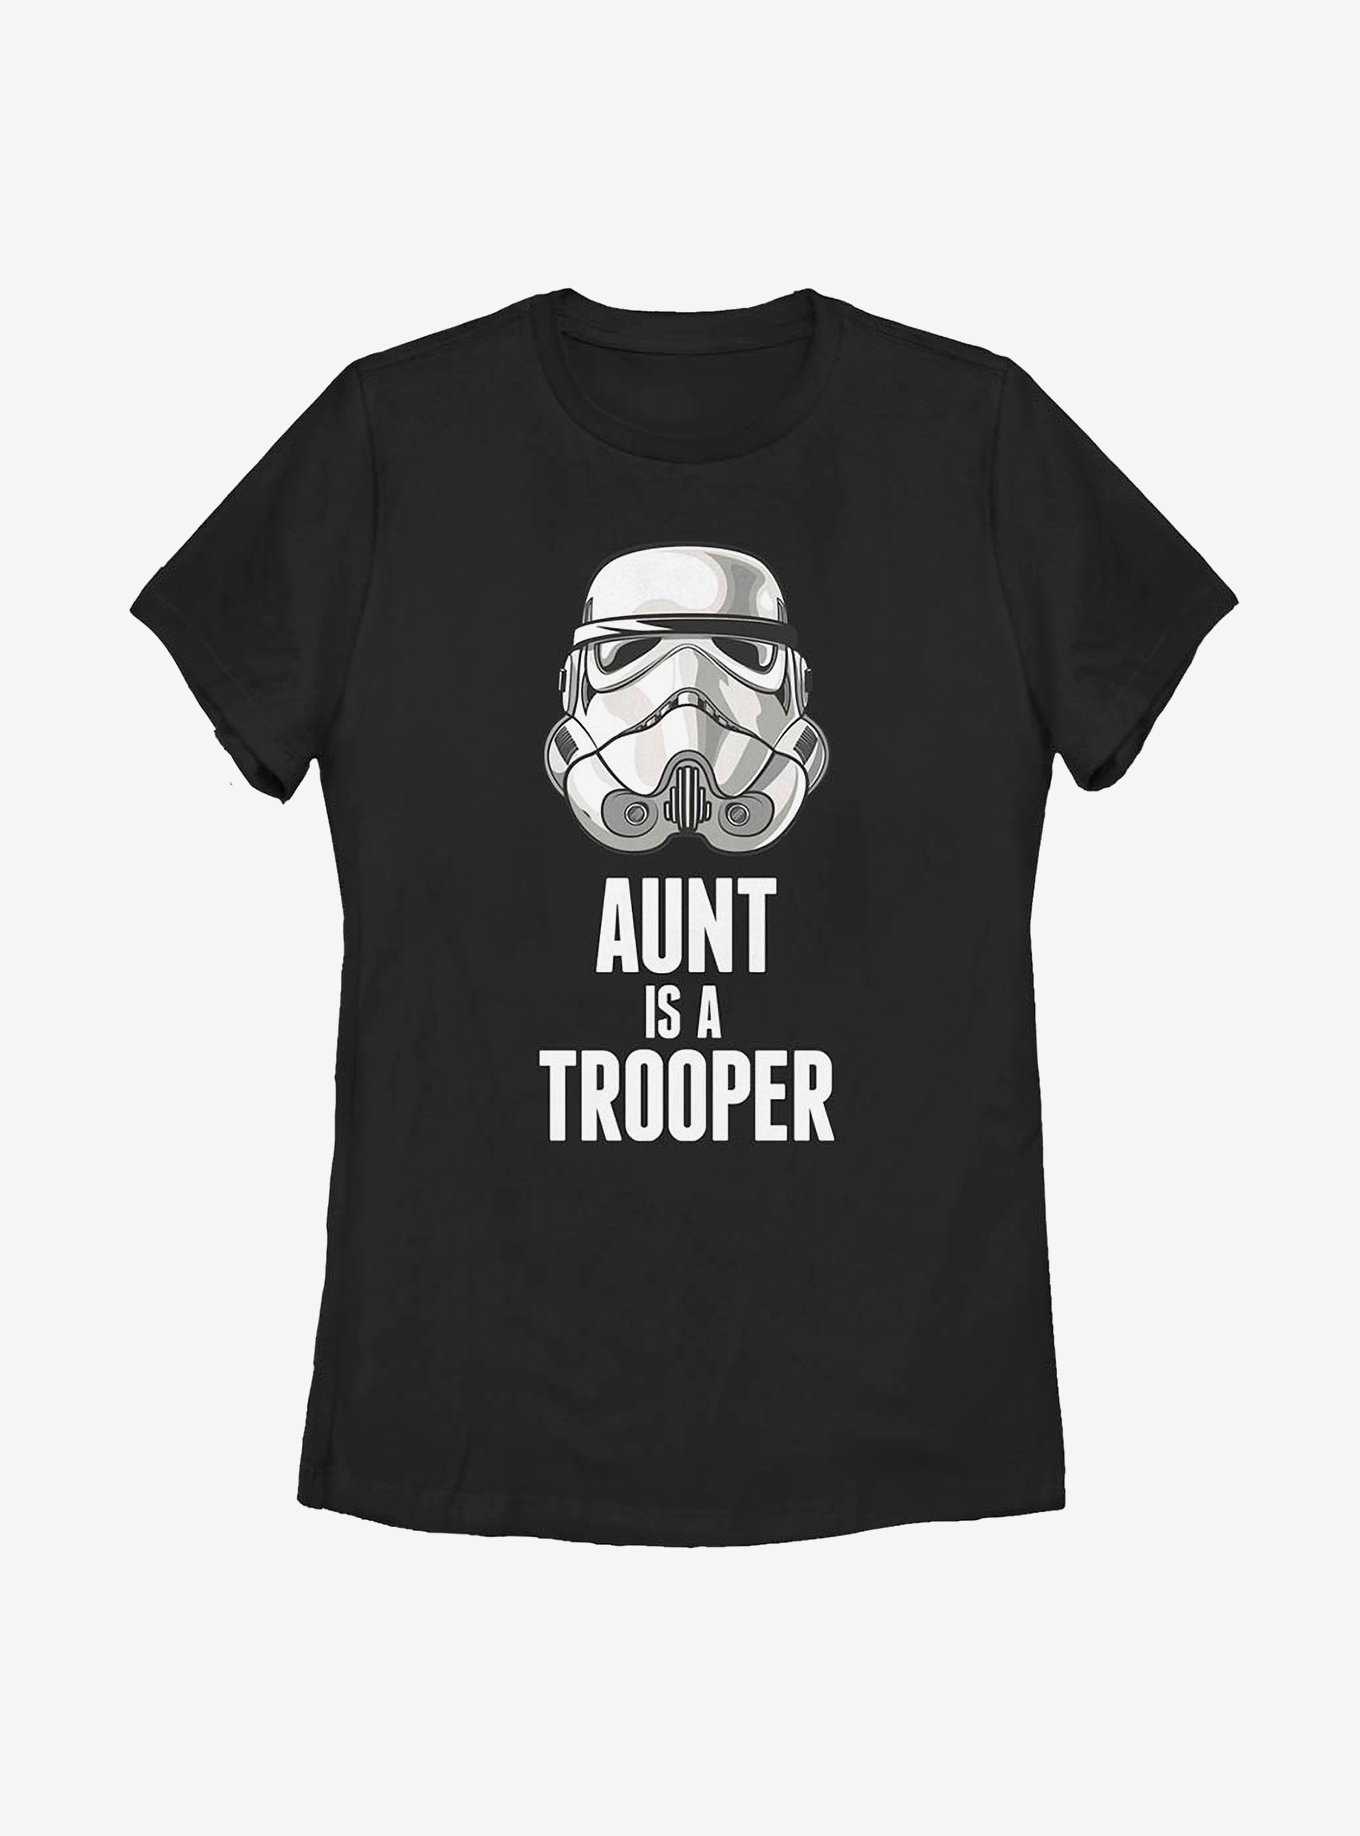 Star Wars Aunt Trooper Womens T-Shirt, , hi-res